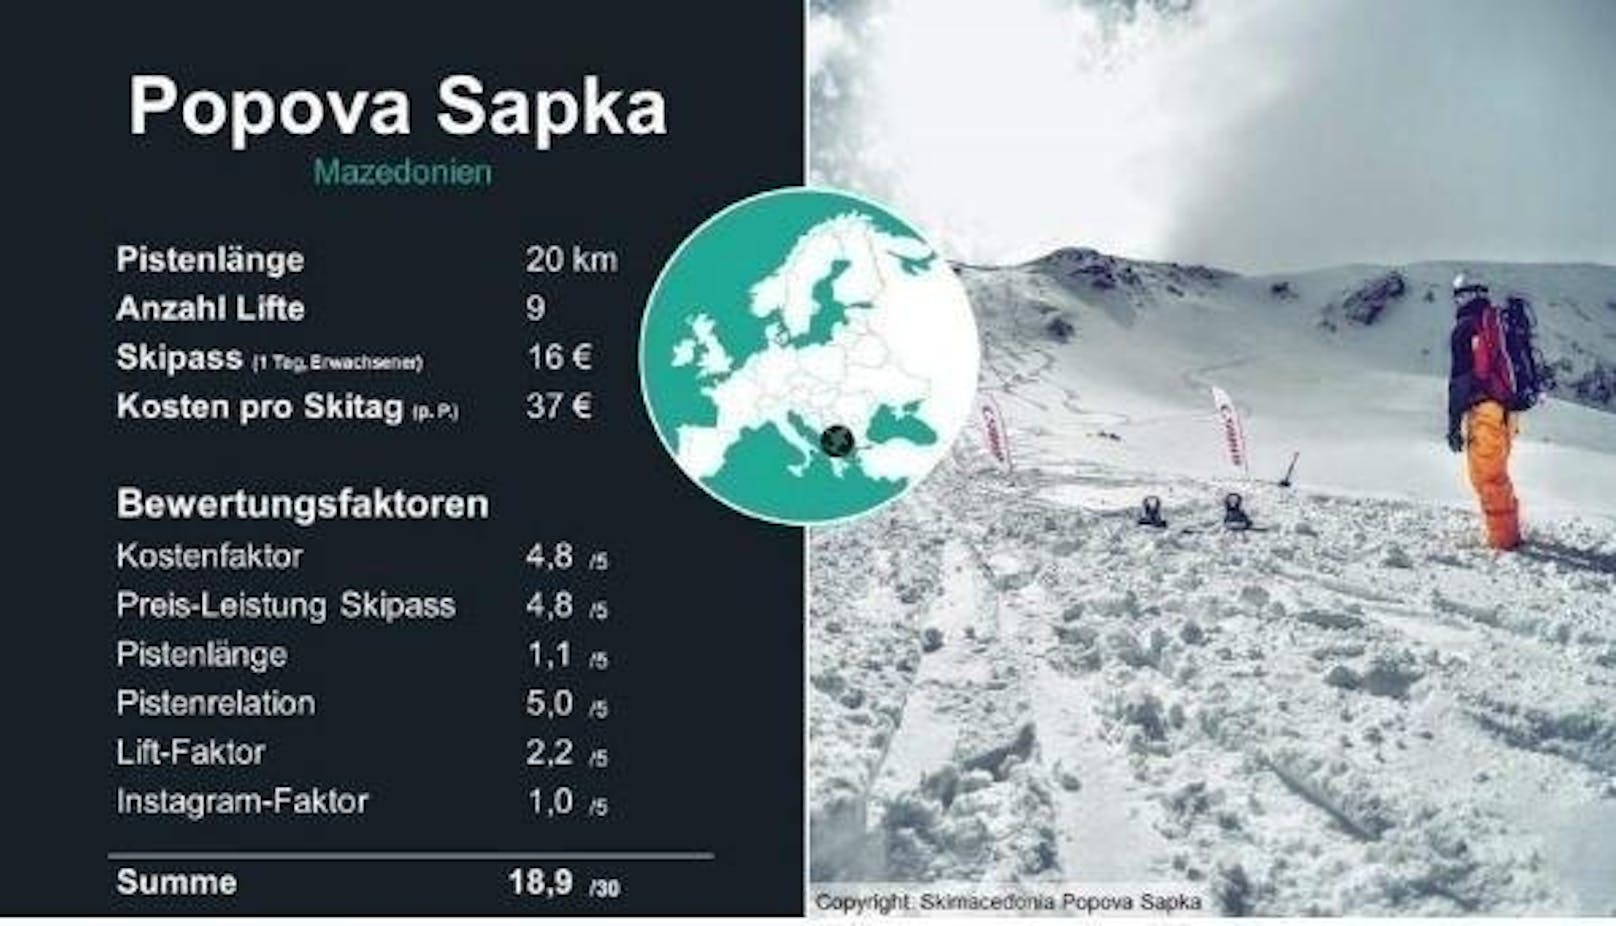 <b>7. Platz: Popopva Sapka </b>

In Polog in Mazedonien befindet sich eines der ältesten Skigebiete des Landes, das im Jahr 1947 eröffnete. Die Höhenmeter erstrecken sich von 1.708 bis 2.525 Metern. Hier hat man ein großartiges Angebot für einen günstigen Familienurlaub.